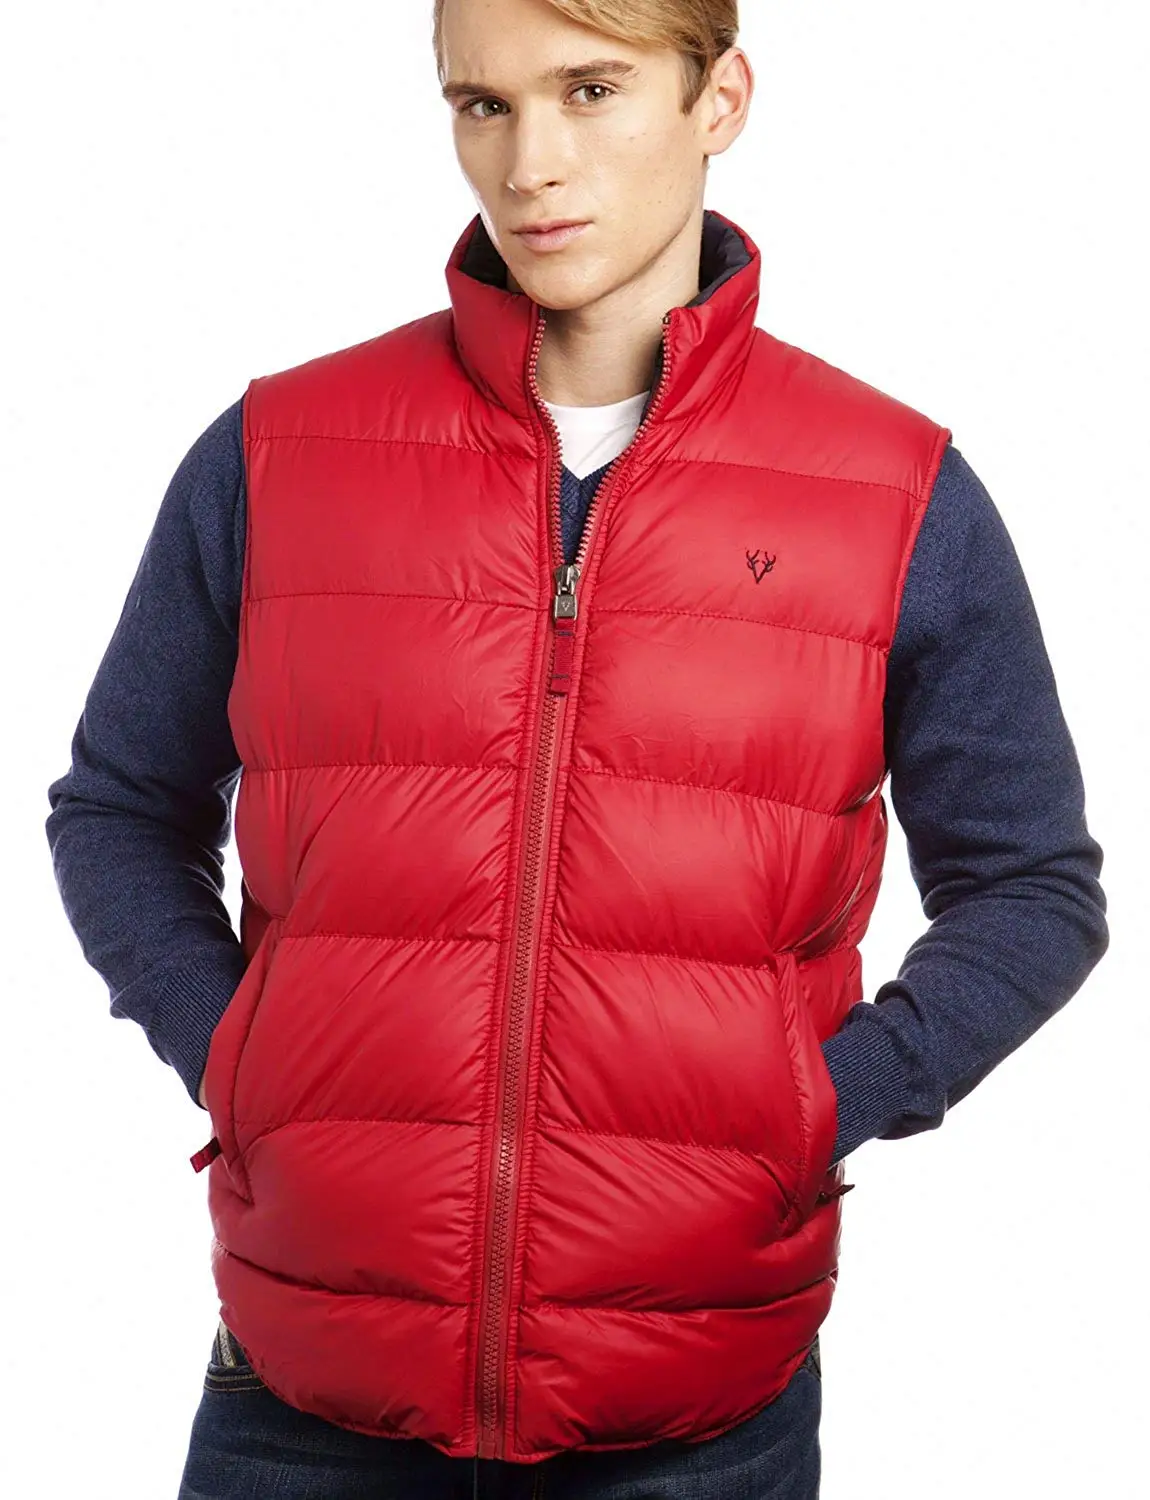 Buy VEDONEIRE Mens Padded Vest (3063 RED) gilet sleeveless coat in ...